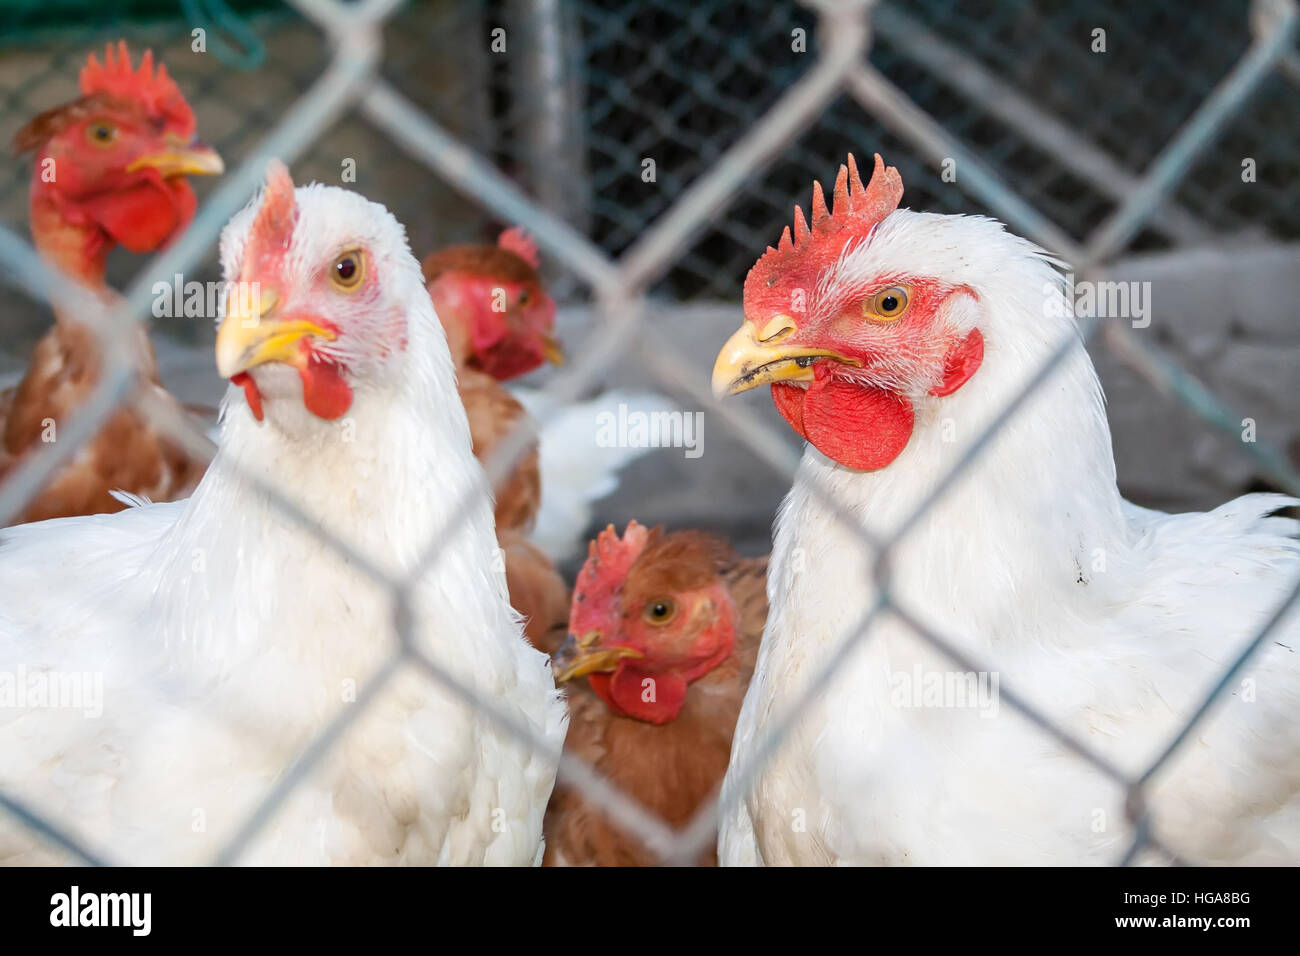 Deux poulets ou poules blanches à l'intérieur d'un poulailler ou poulailler vu à travers le fil de poulet. Banque D'Images